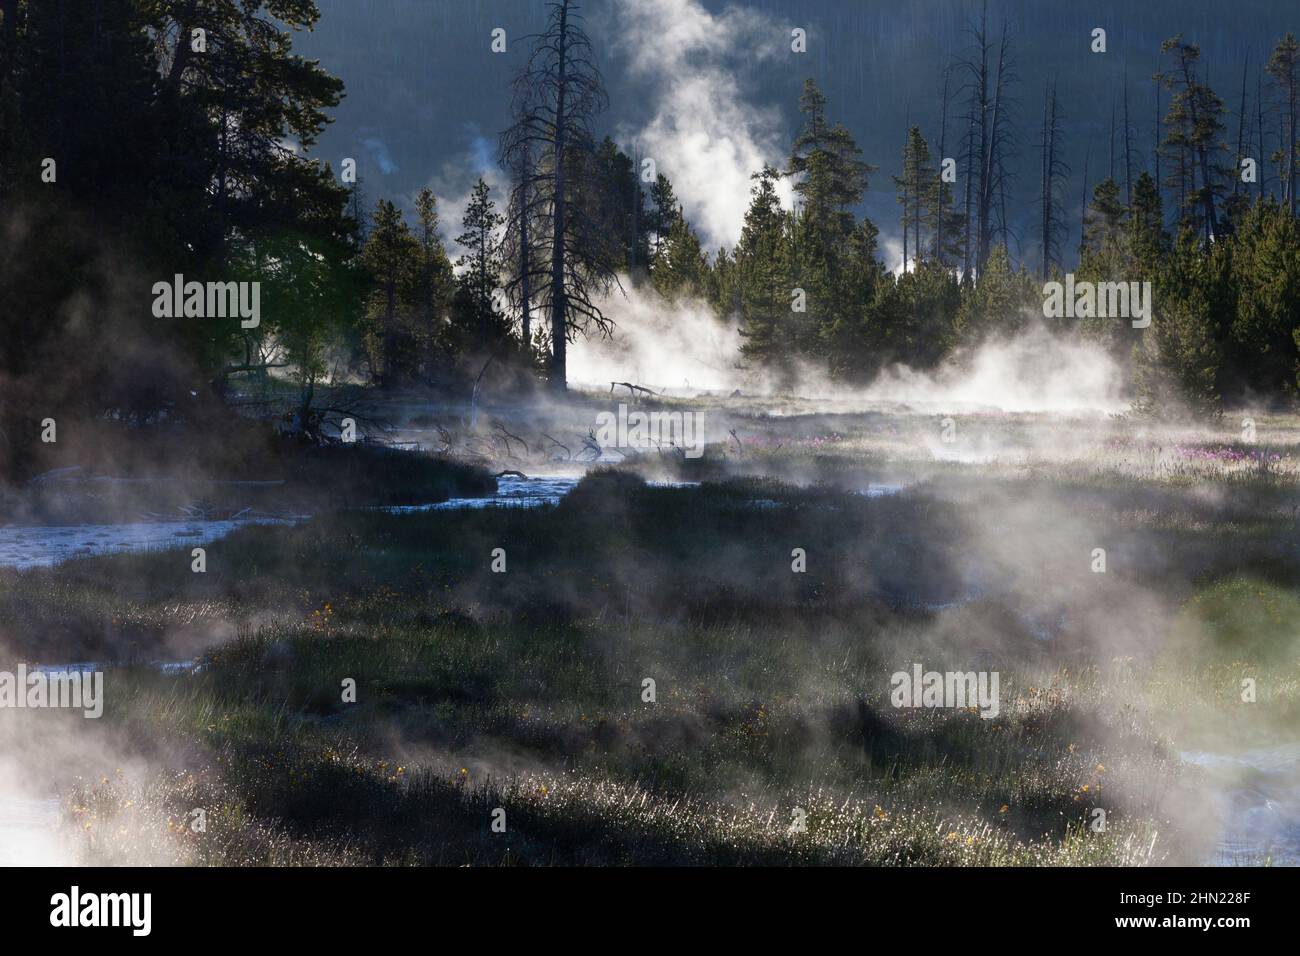 Vapeur provenant des eaux de ruissellement dans les cours d'eau, tôt le matin, bassin Geyser Midway, parc national de Yellowstone, Wyoming, ÉTATS-UNIS Banque D'Images